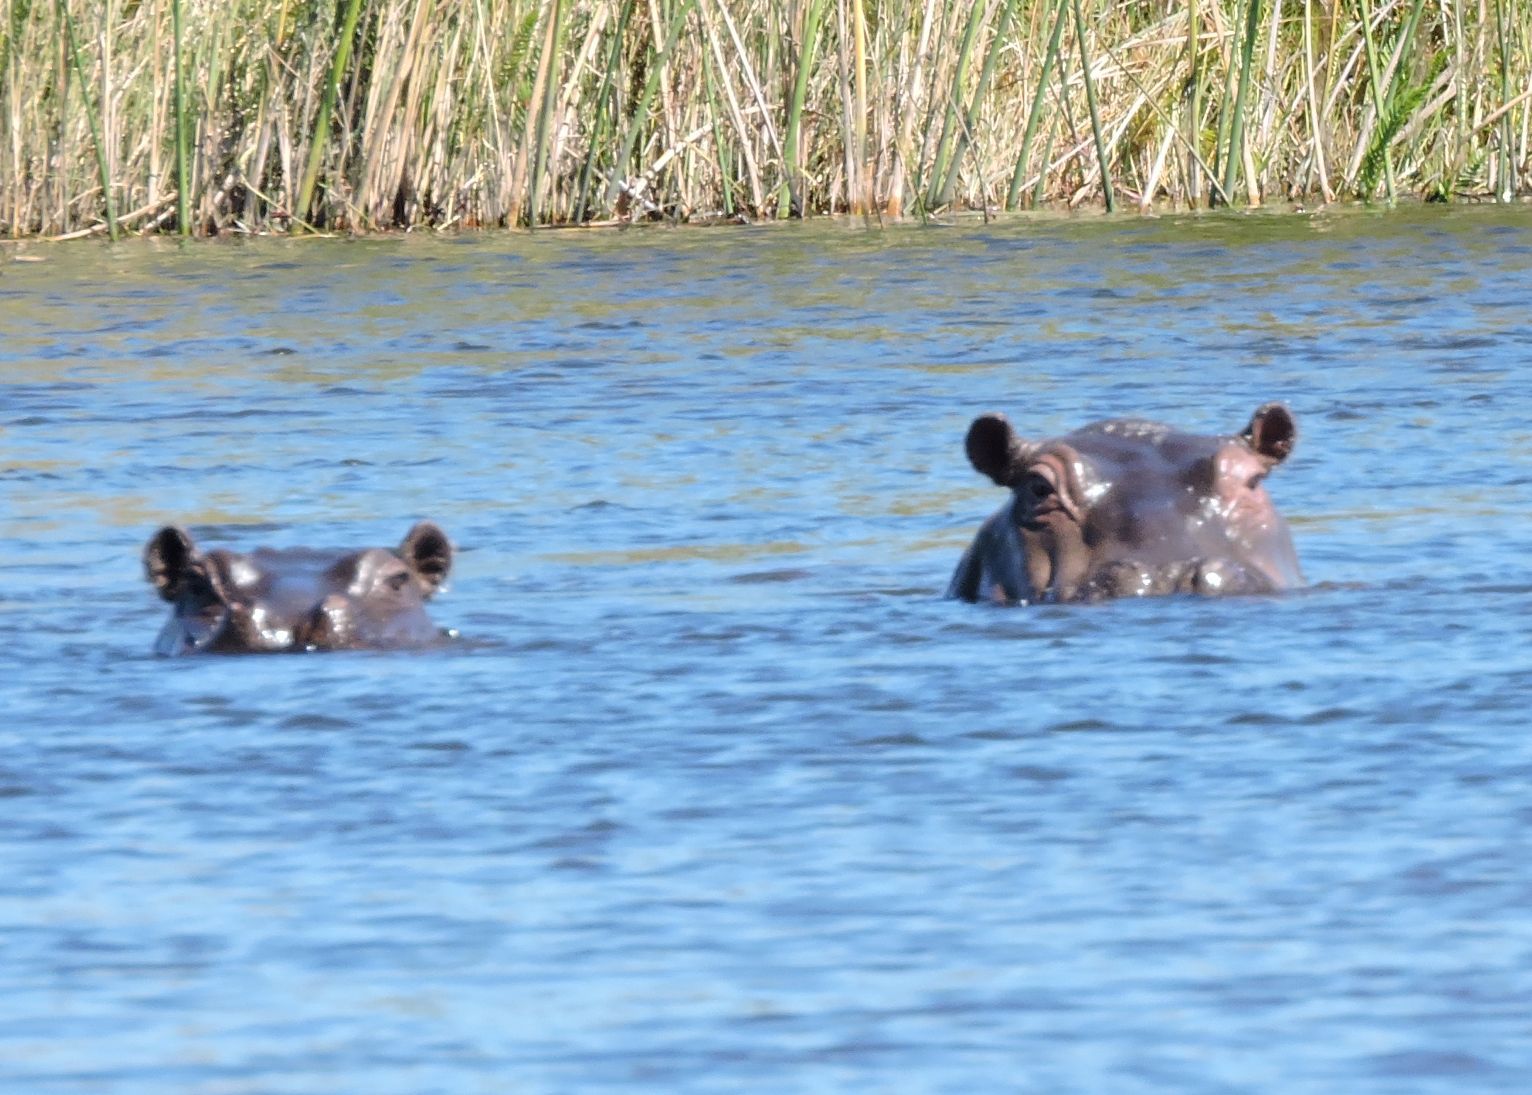 Image of Common Hippopotamus